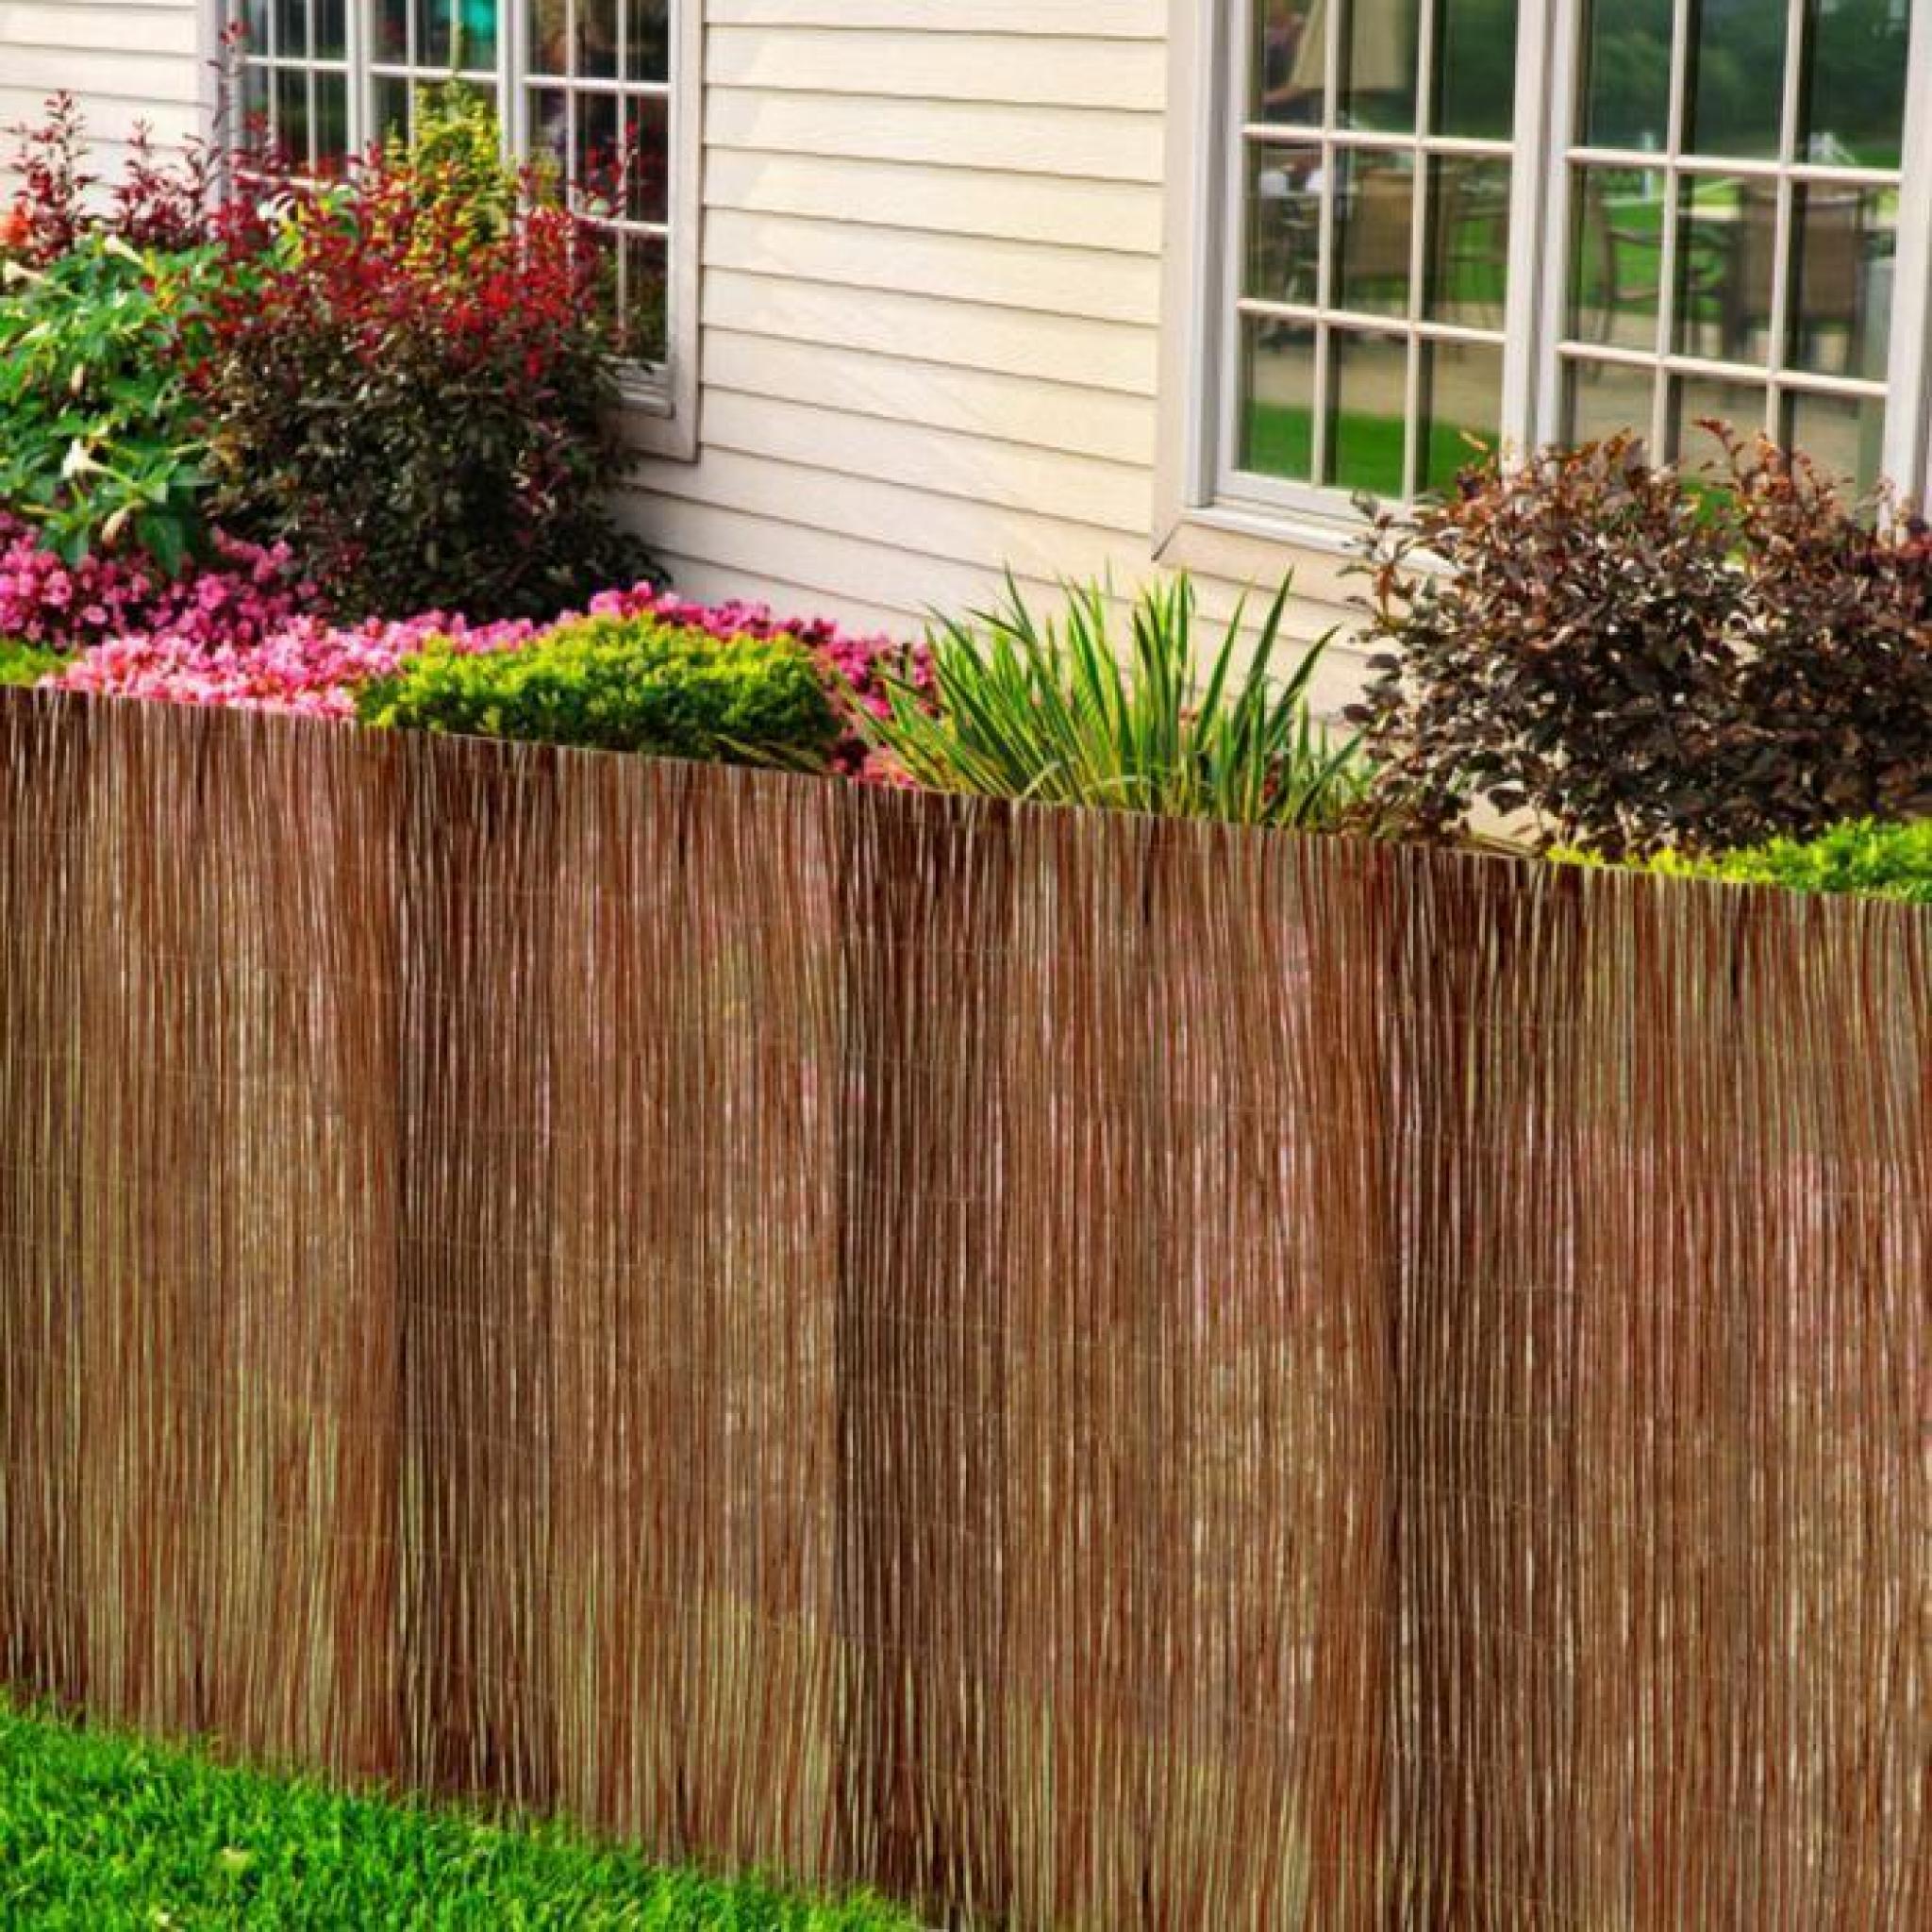 Notre clôture en osier peut être utilisé de plusieurs façons, comme par exemple : clôturer votre espace de jardin privé, embellir...